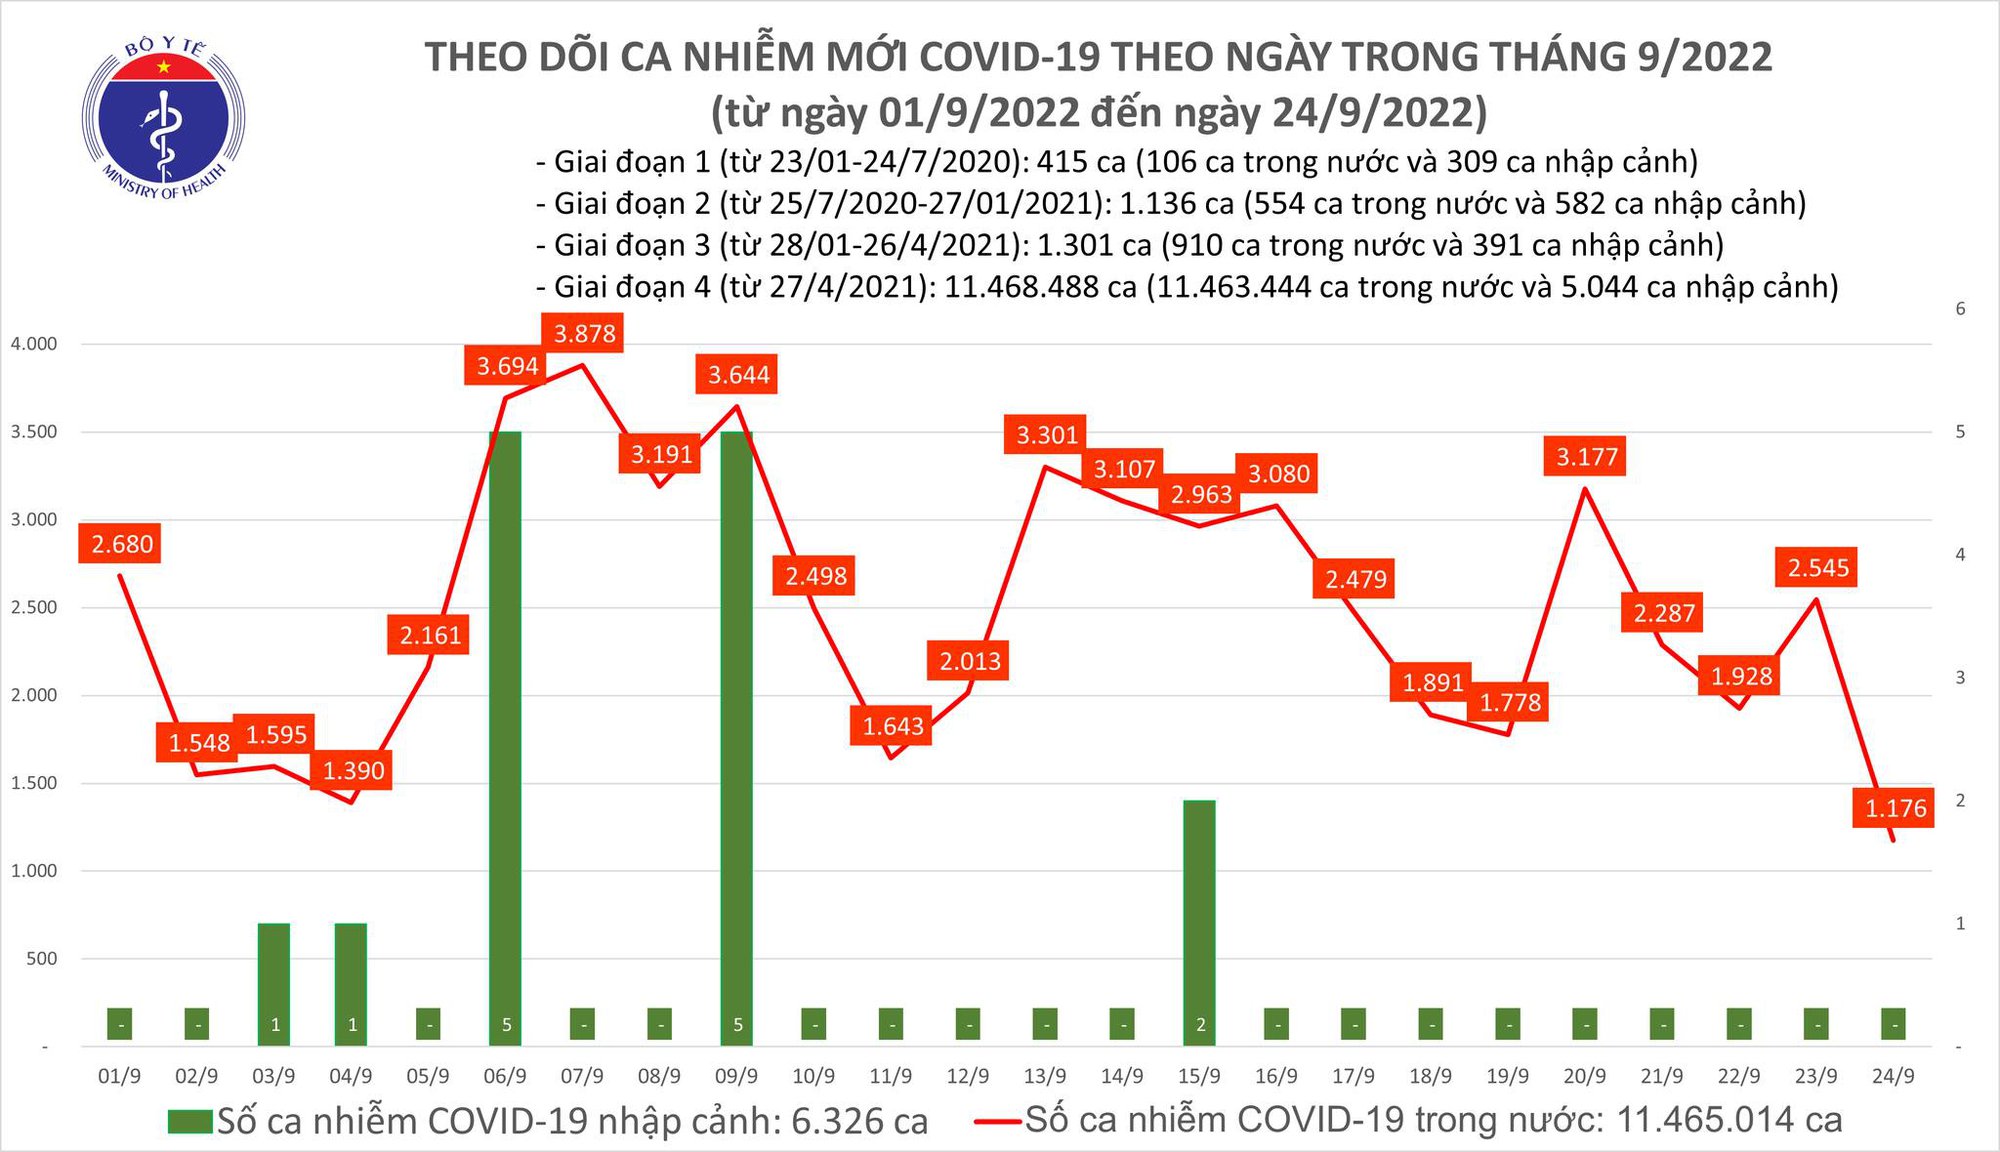 Ngày 24/9: Có 1.176 ca COVID-19, thấp nhất trong gần 2 tháng qua - Ảnh 1.